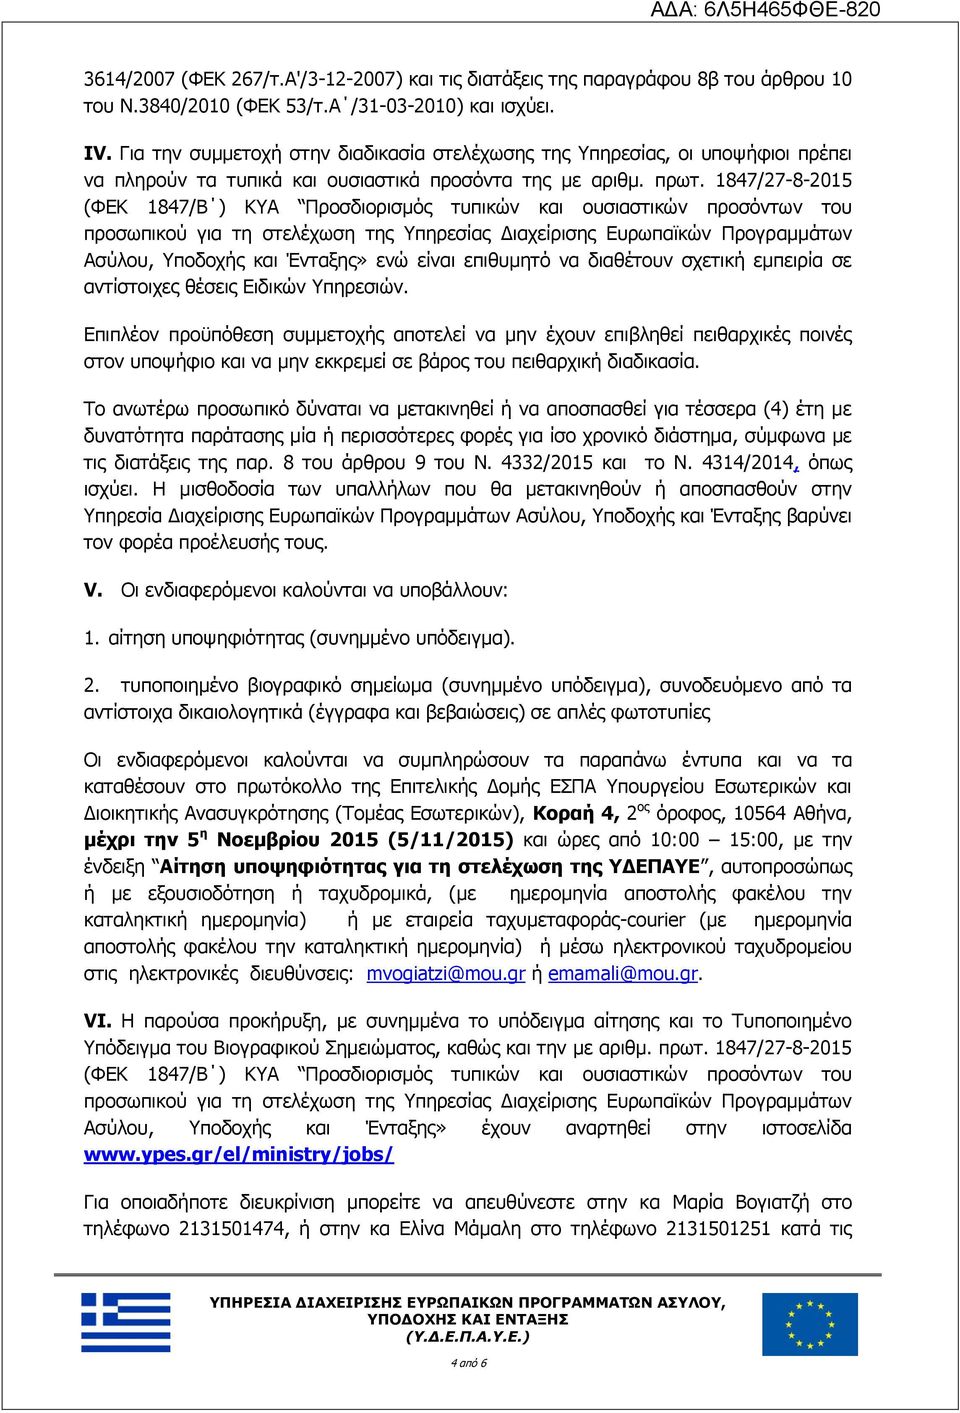 1847/27-8-2015 (ΦΕΚ 1847/Β ) ΚΥΑ Προσδιορισμός τυπικών και ουσιαστικών προσόντων του προσωπικού για τη στελέχωση της Υπηρεσίας Διαχείρισης Ευρωπαϊκών Προγραμμάτων Ασύλου, Υποδοχής και Ένταξης» ενώ